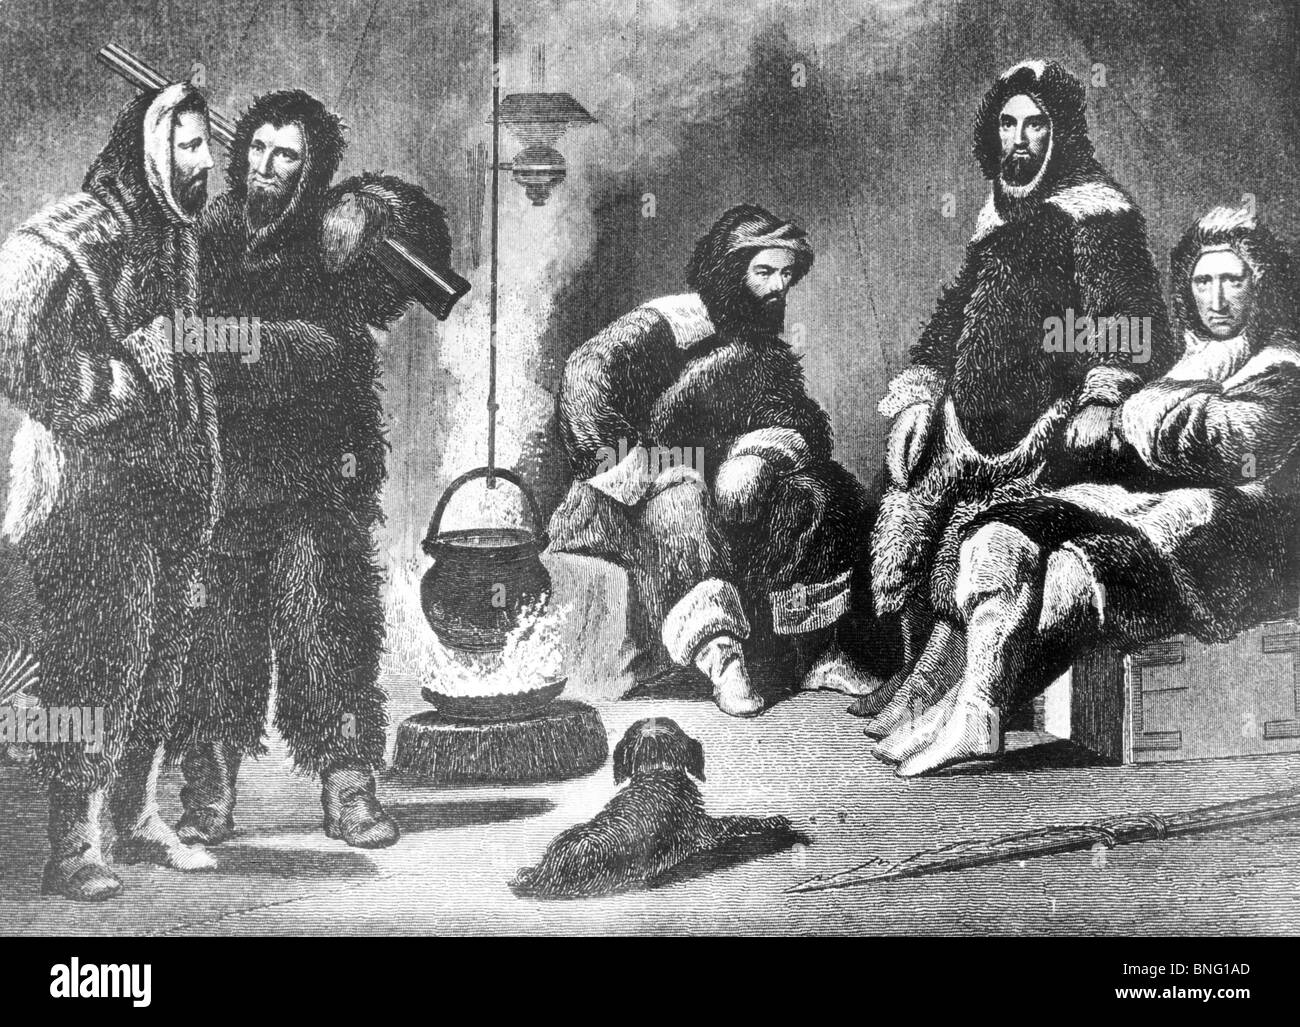 La 2ème expédition Grinnell dans leurs quartiers d'hiver (le Dr Kane est 3e de gauche) par un artiste inconnu, 1853 Banque D'Images